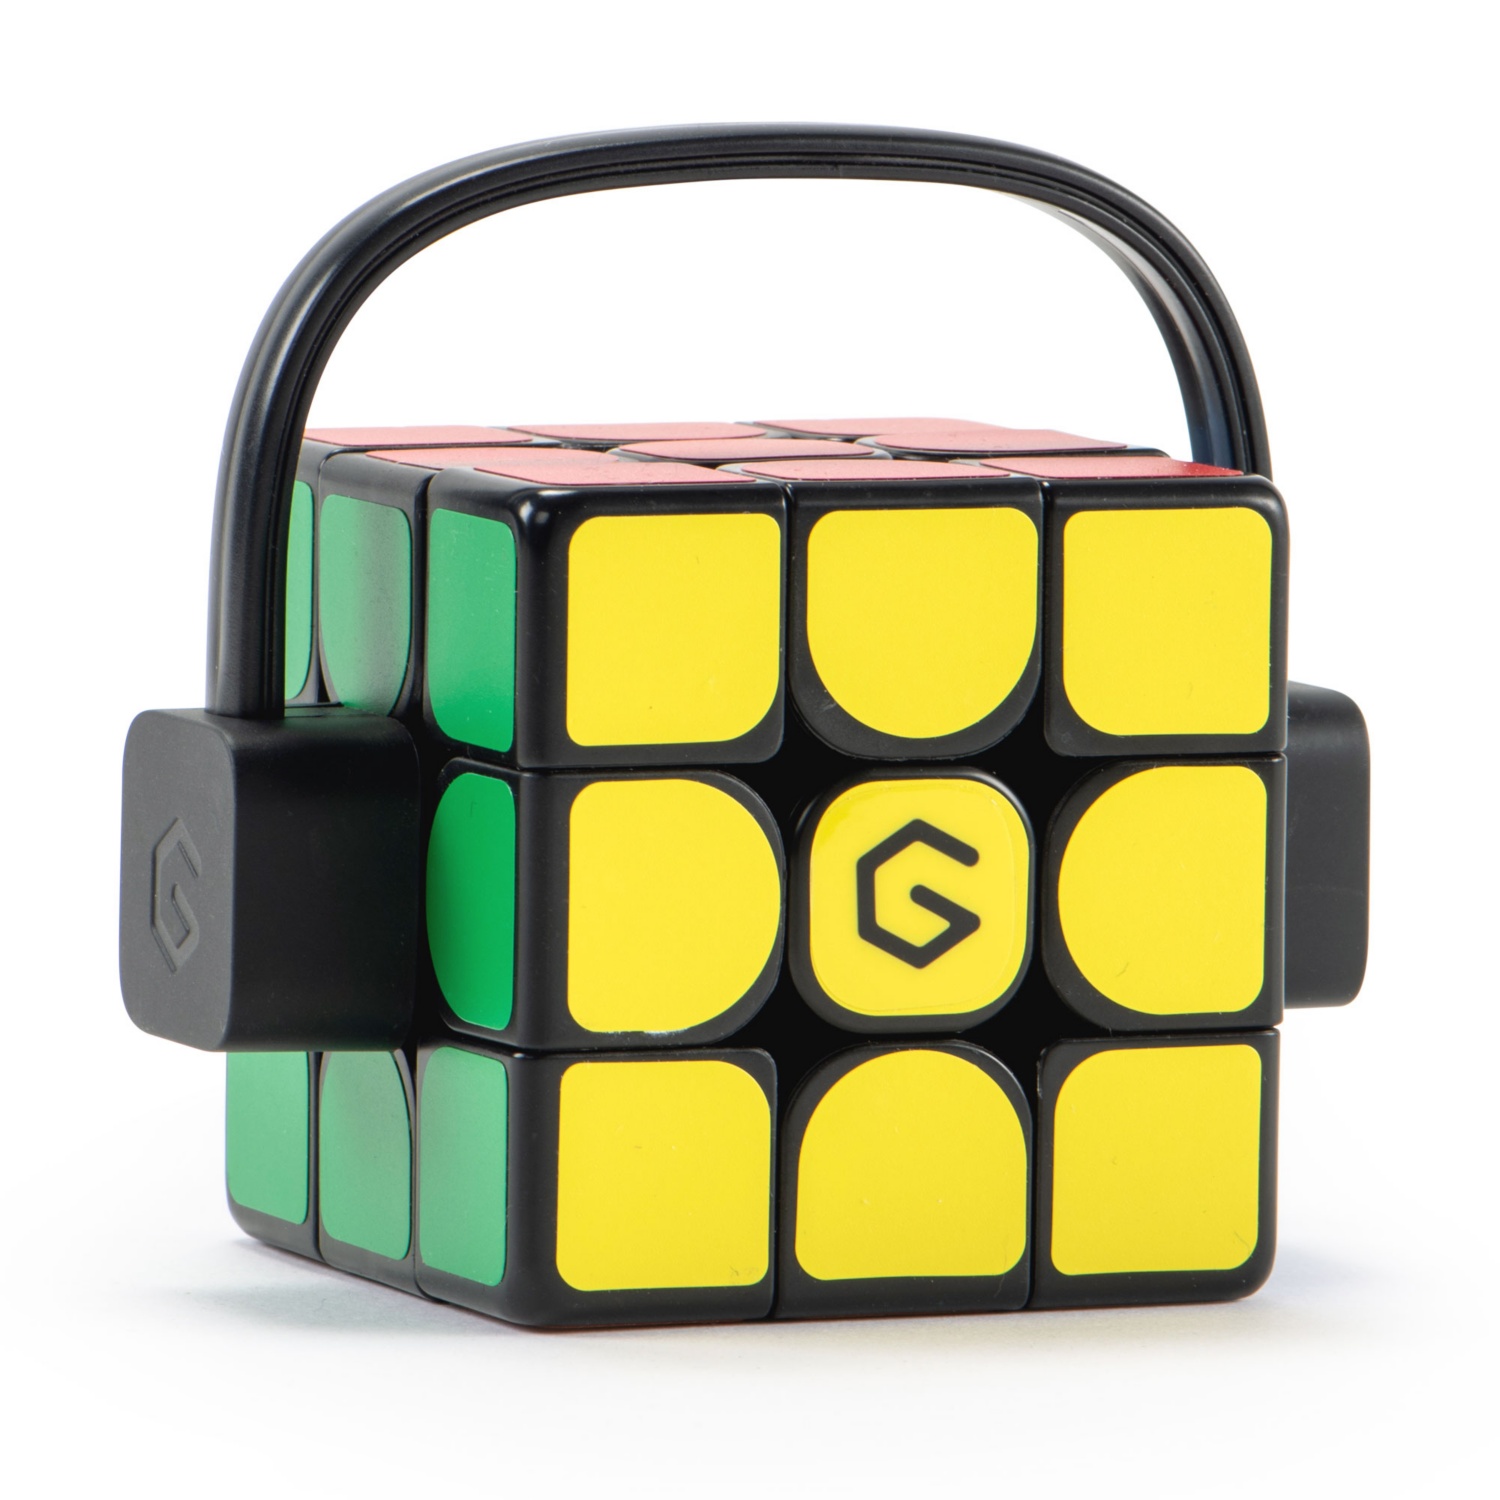 GIIKER Supercube Rubik's Cube